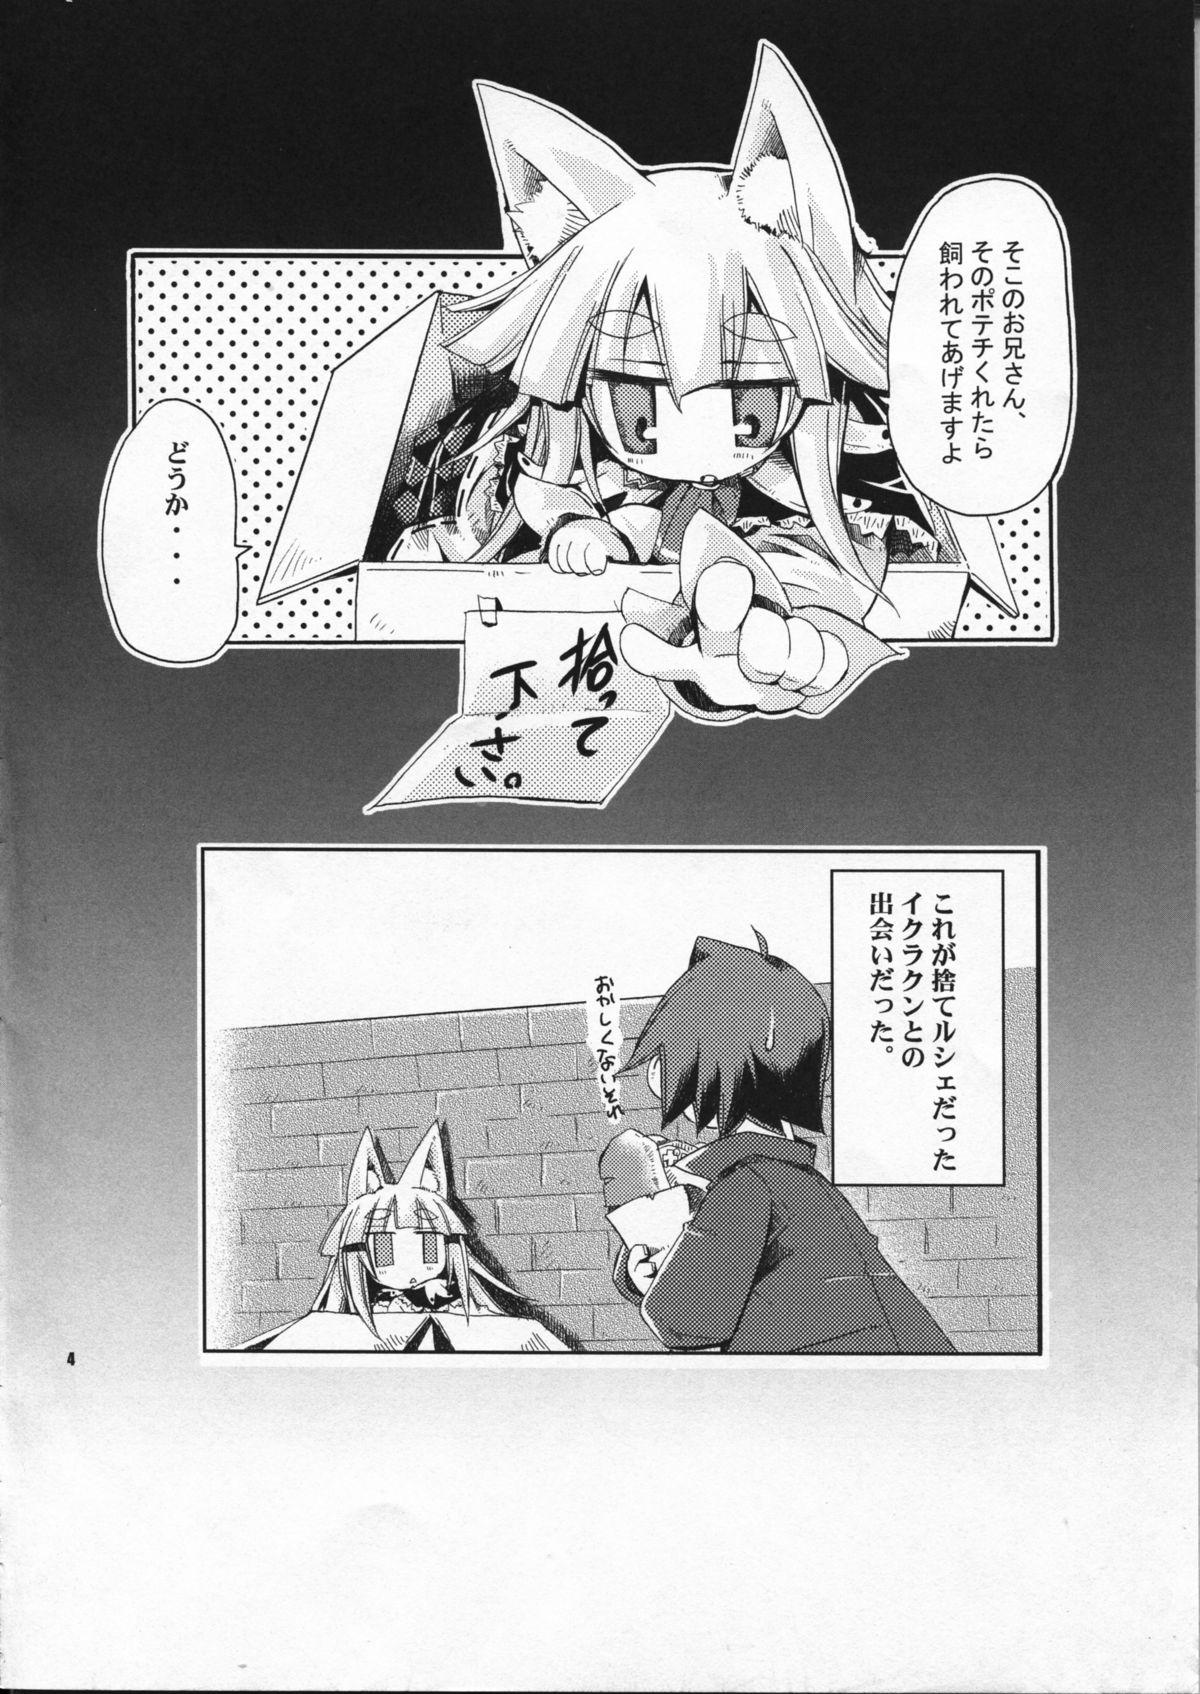 Masturbating Wagaya no Ikura no Kaikata - 7th dragon Beautiful - Page 4